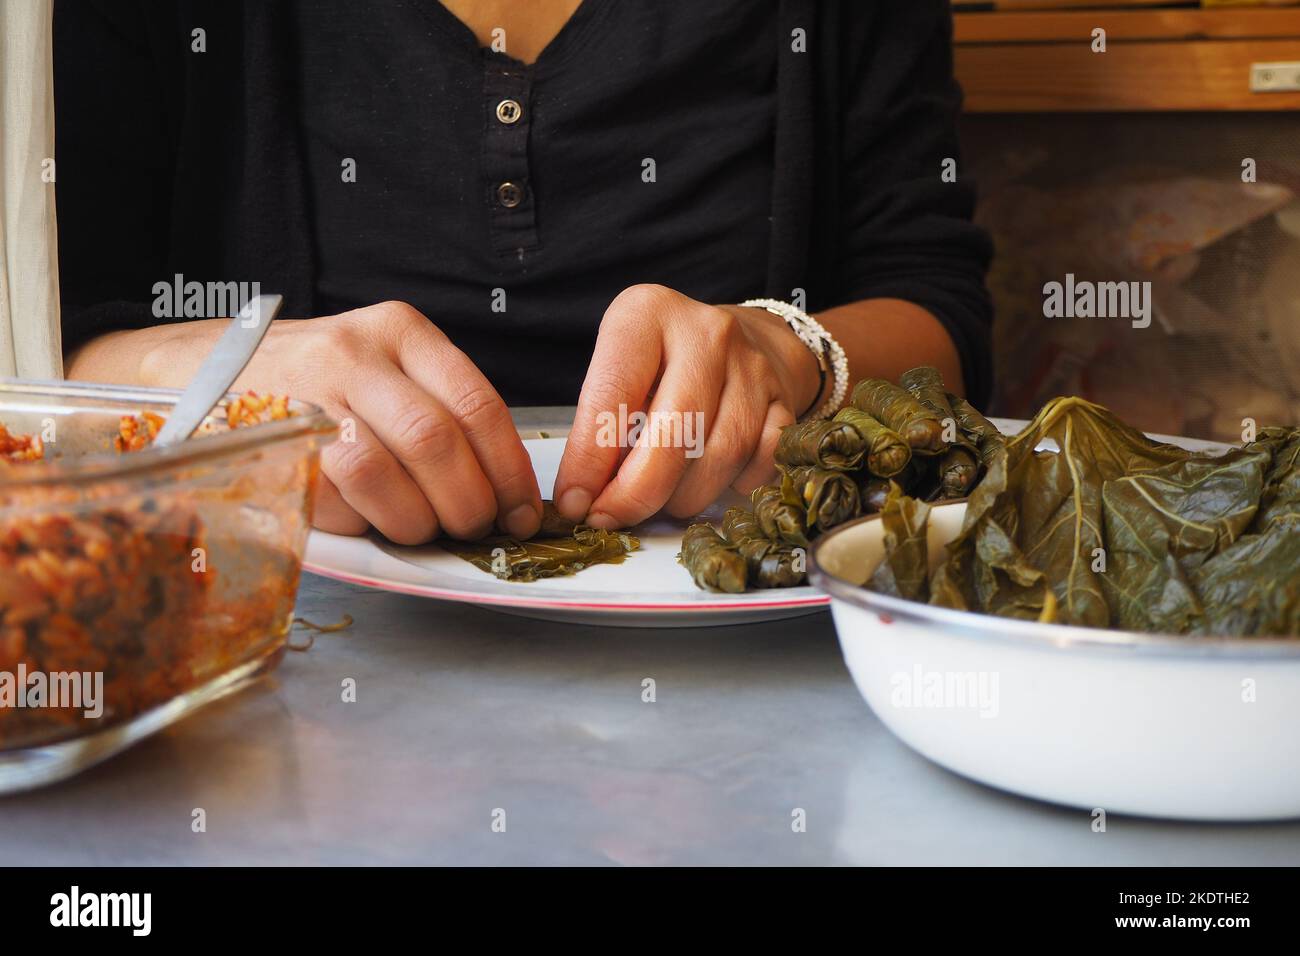 Feuilles de raisin farcies de riz et d'herbes .femme préparant la feuille enveloppée. Feuilles de raisin farcies prêtes à cuire. Cuisine traditionnelle turque, Yaprak Sarma. Banque D'Images